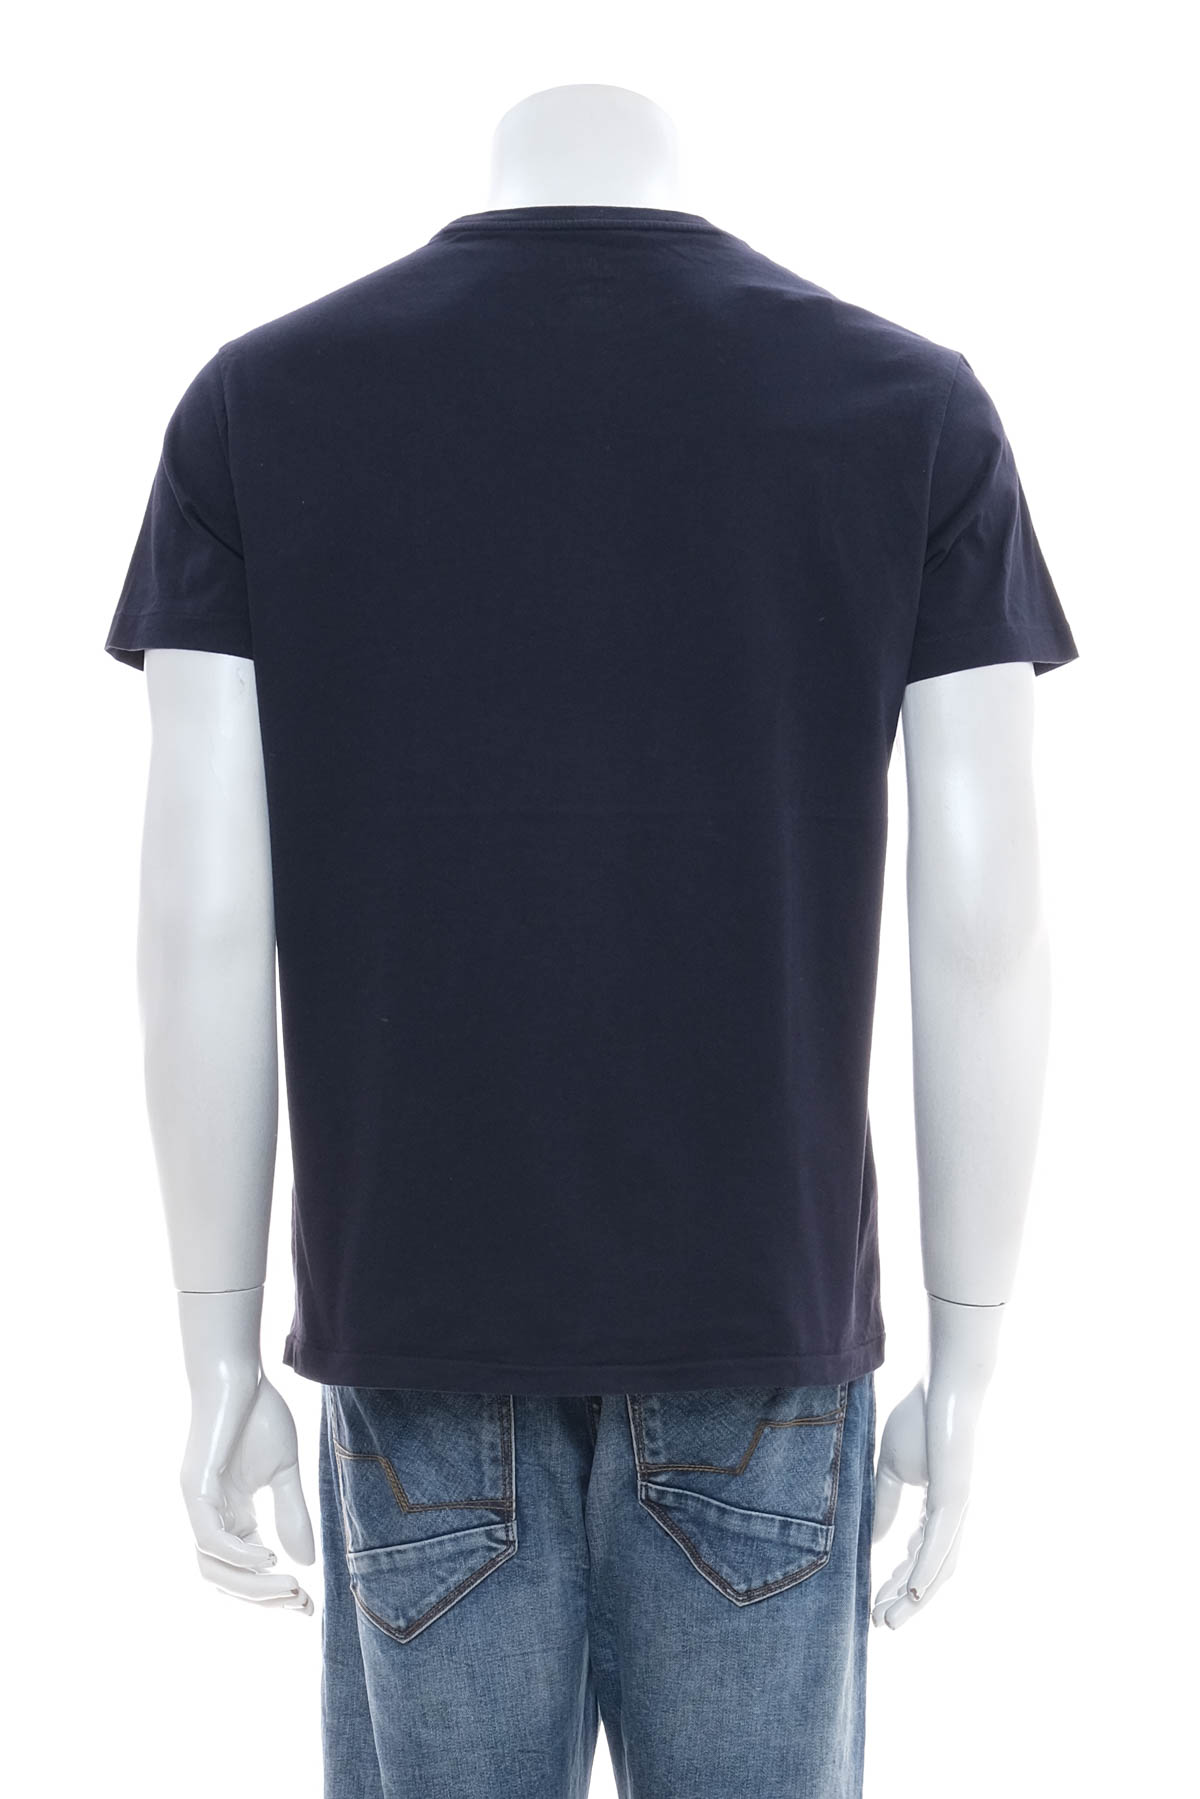 Men's T-shirt - Ralph Lauren - 1